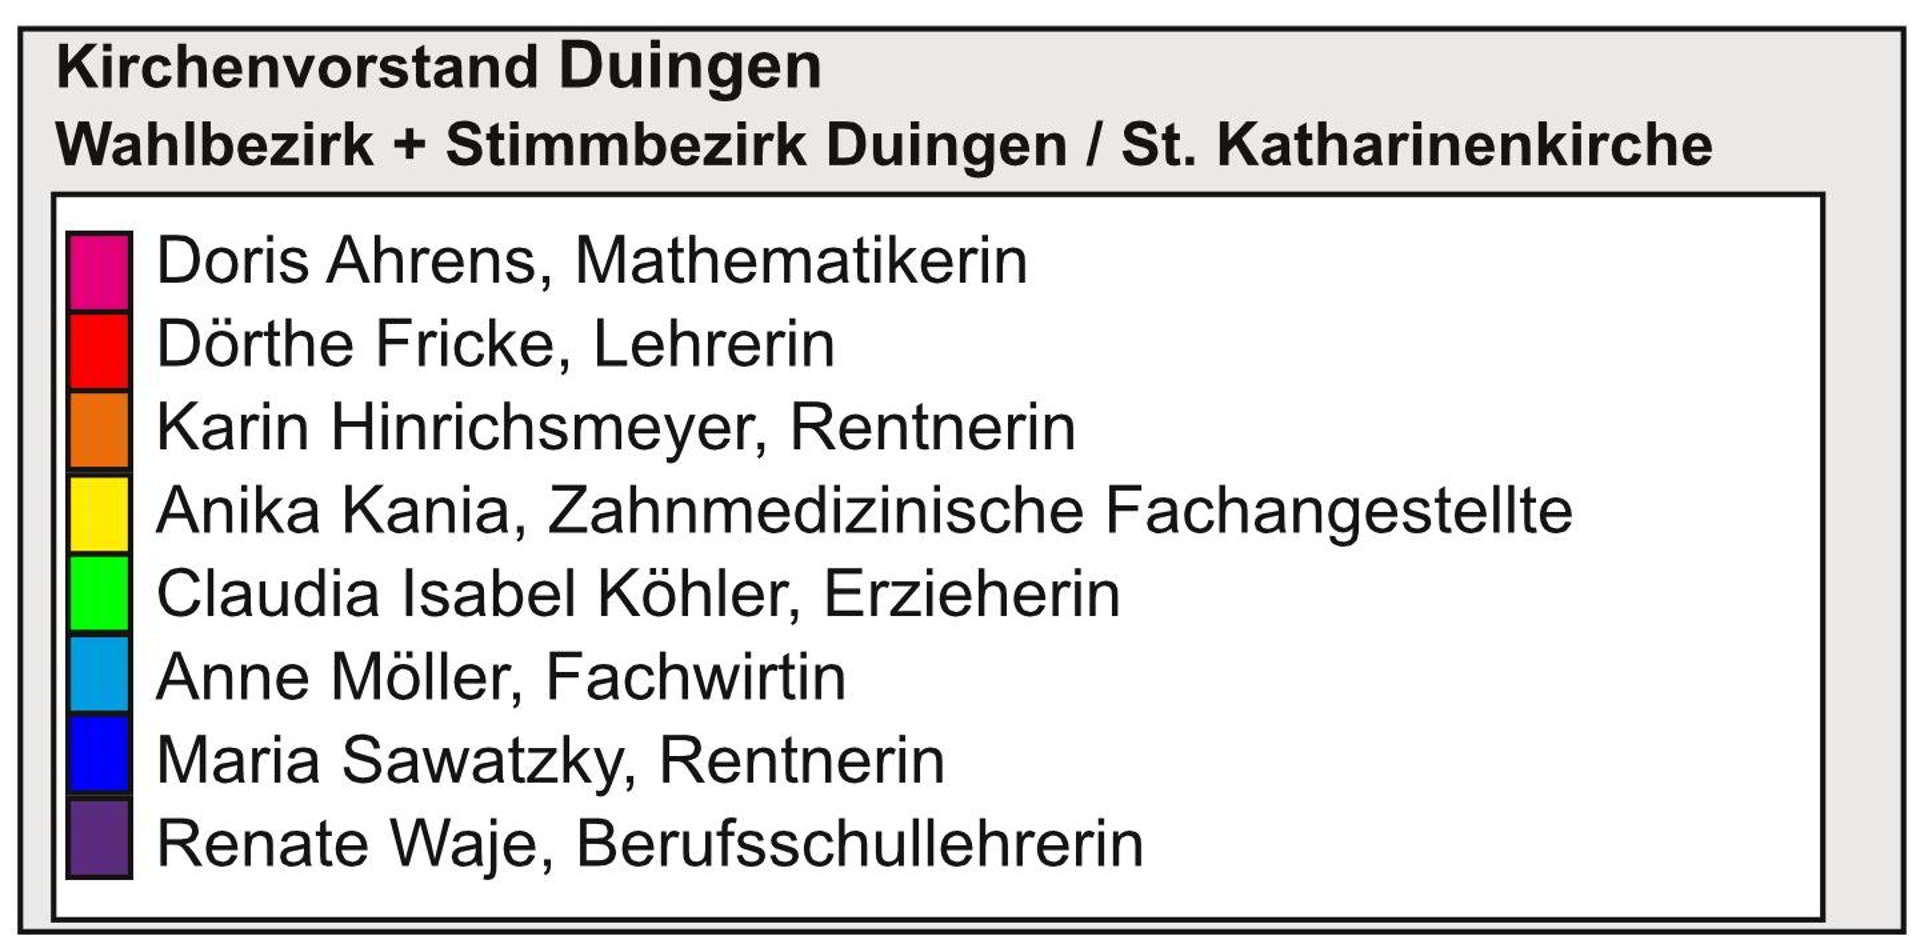 Kirchenvorstandswahl 2018: Kandidaten der Kirchengemeinde Duingen